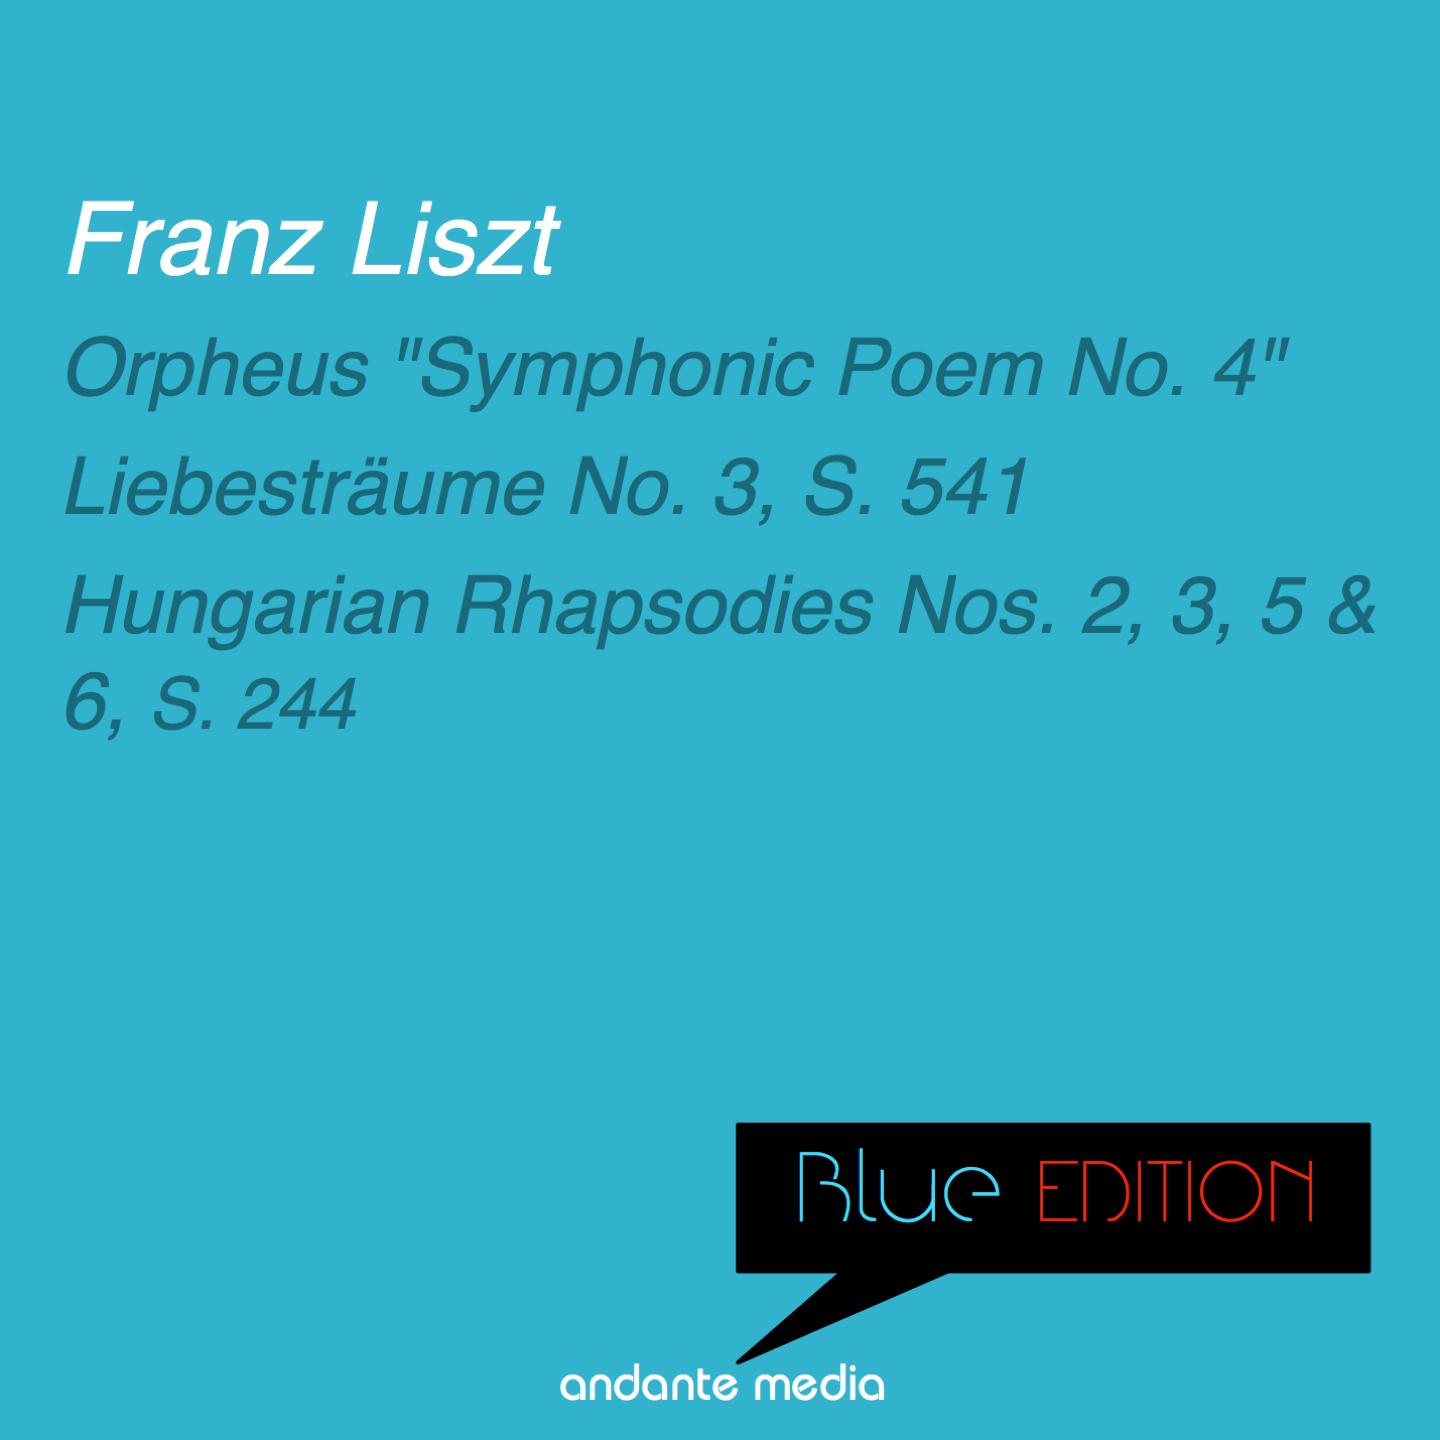 Blue Edition - Liszt: Orpheus "Symphonic Poem No. 4" & Hungarian Rhapsodies Nos. 2, 3, 5 & 6, S. 244